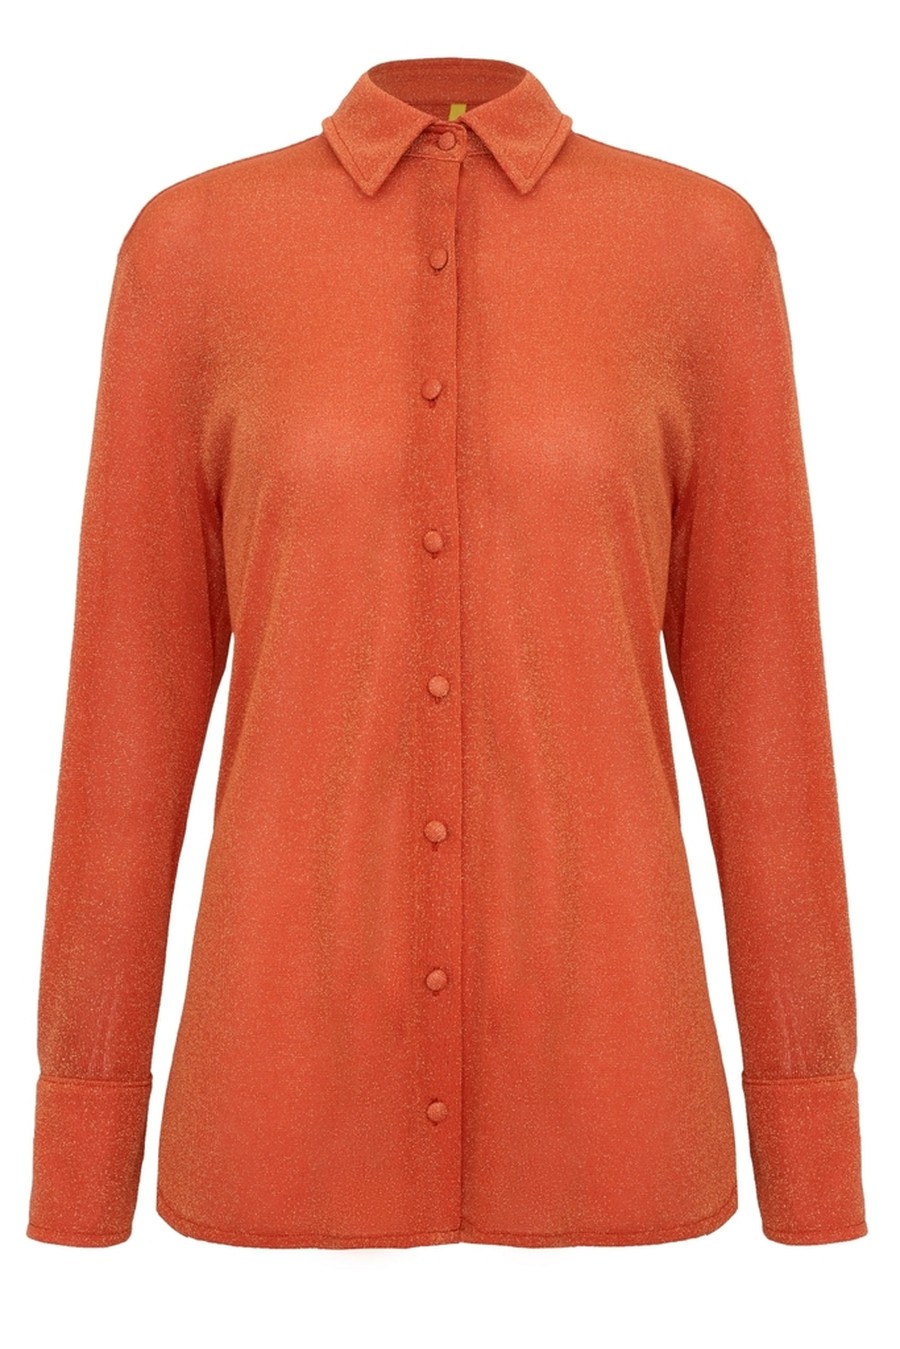 camisa lurex orange SB48 ripple bb